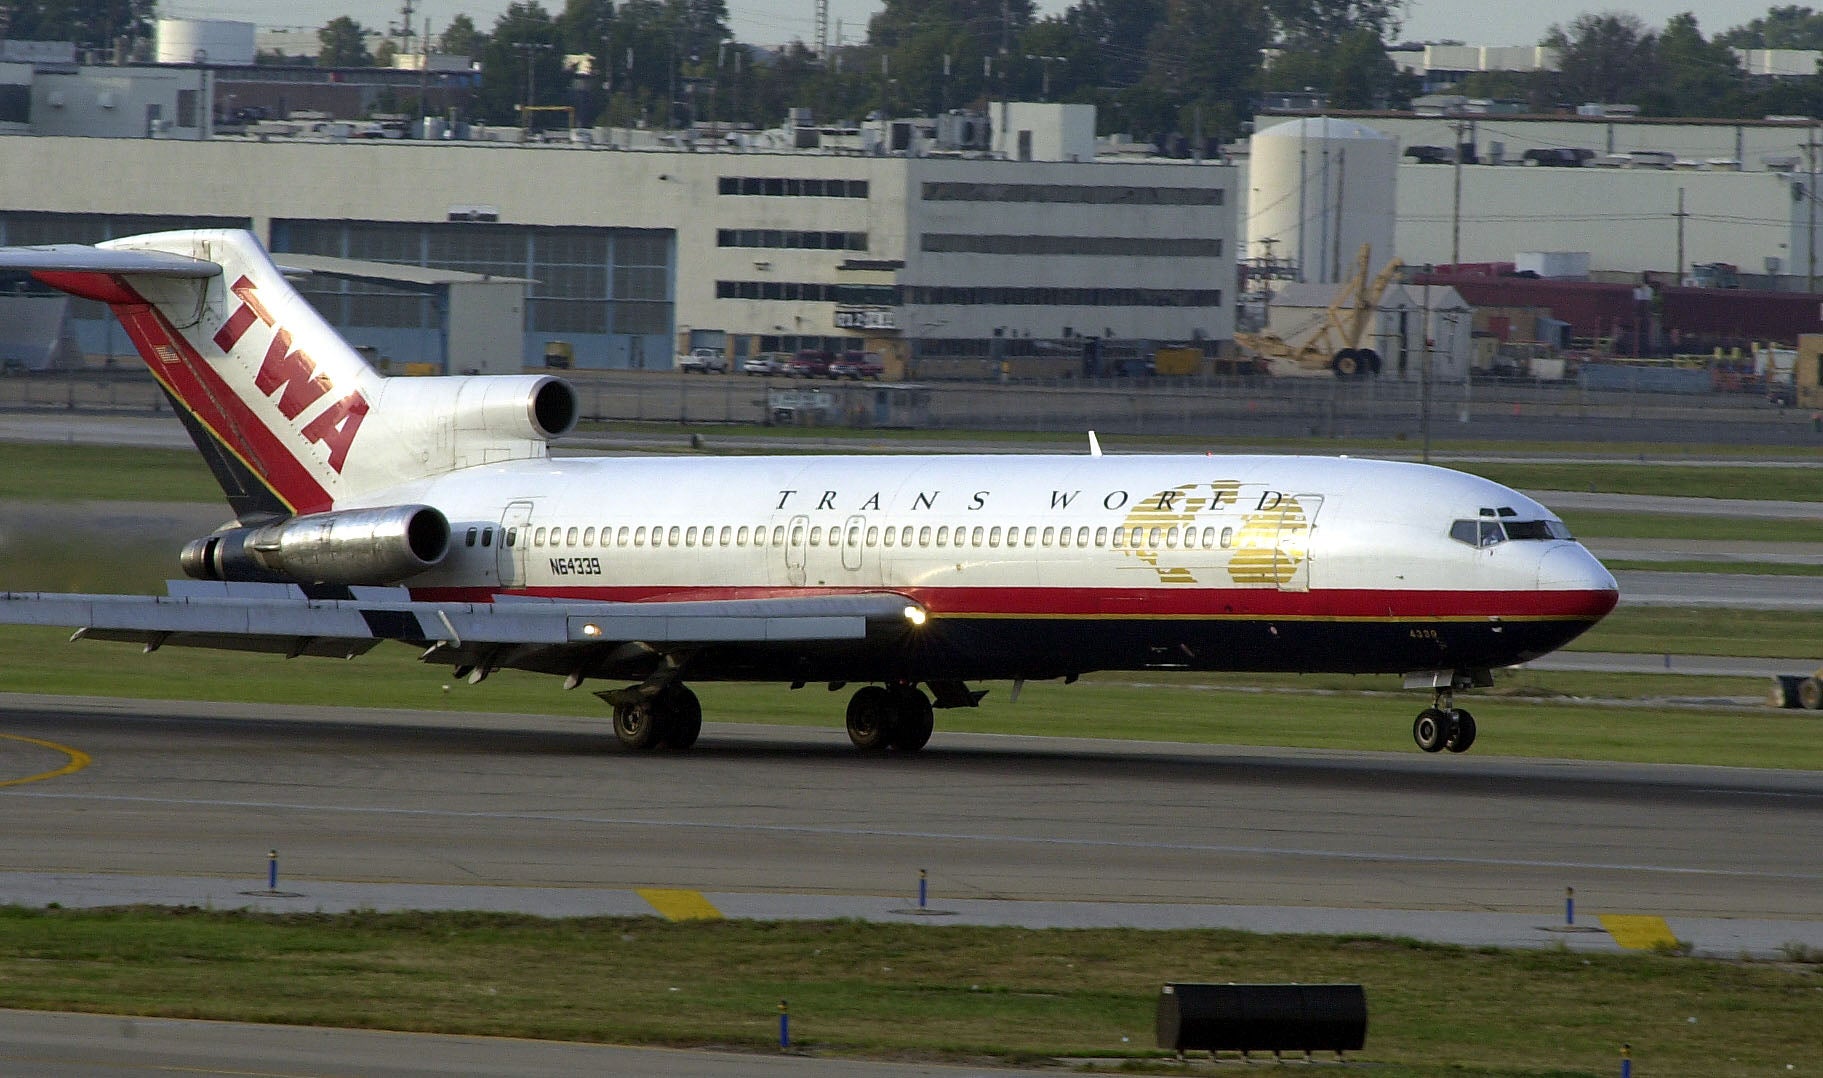 TWA retires 727 plane